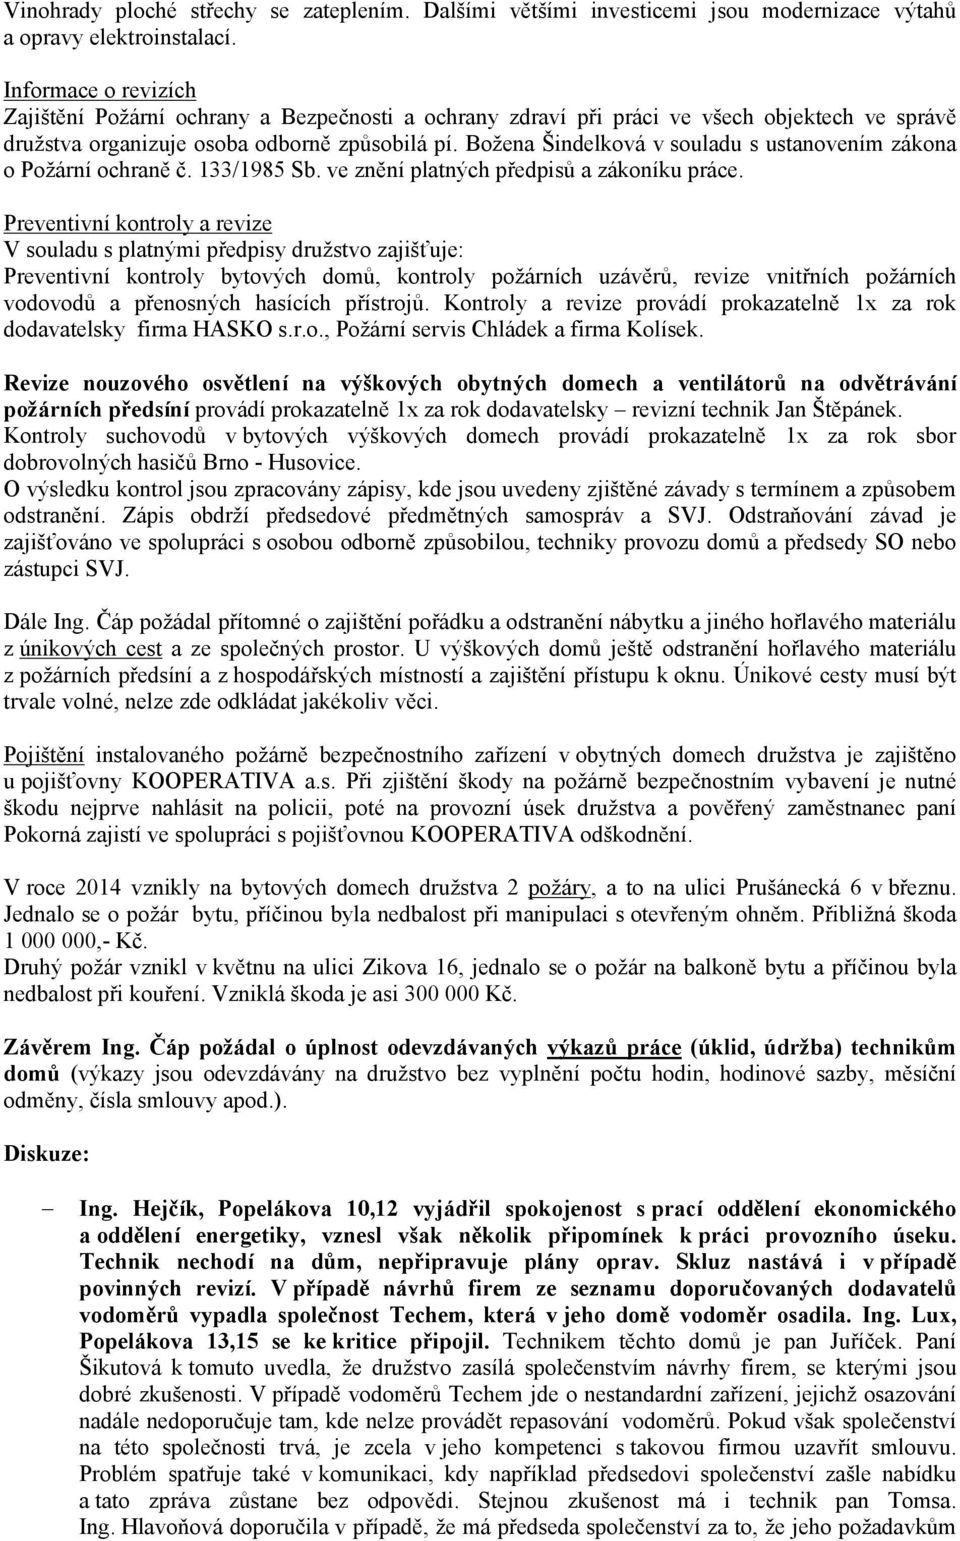 Božena Šindelková v souladu s ustanovením zákona o Požární ochraně č. 133/1985 Sb. ve znění platných předpisů a zákoníku práce.